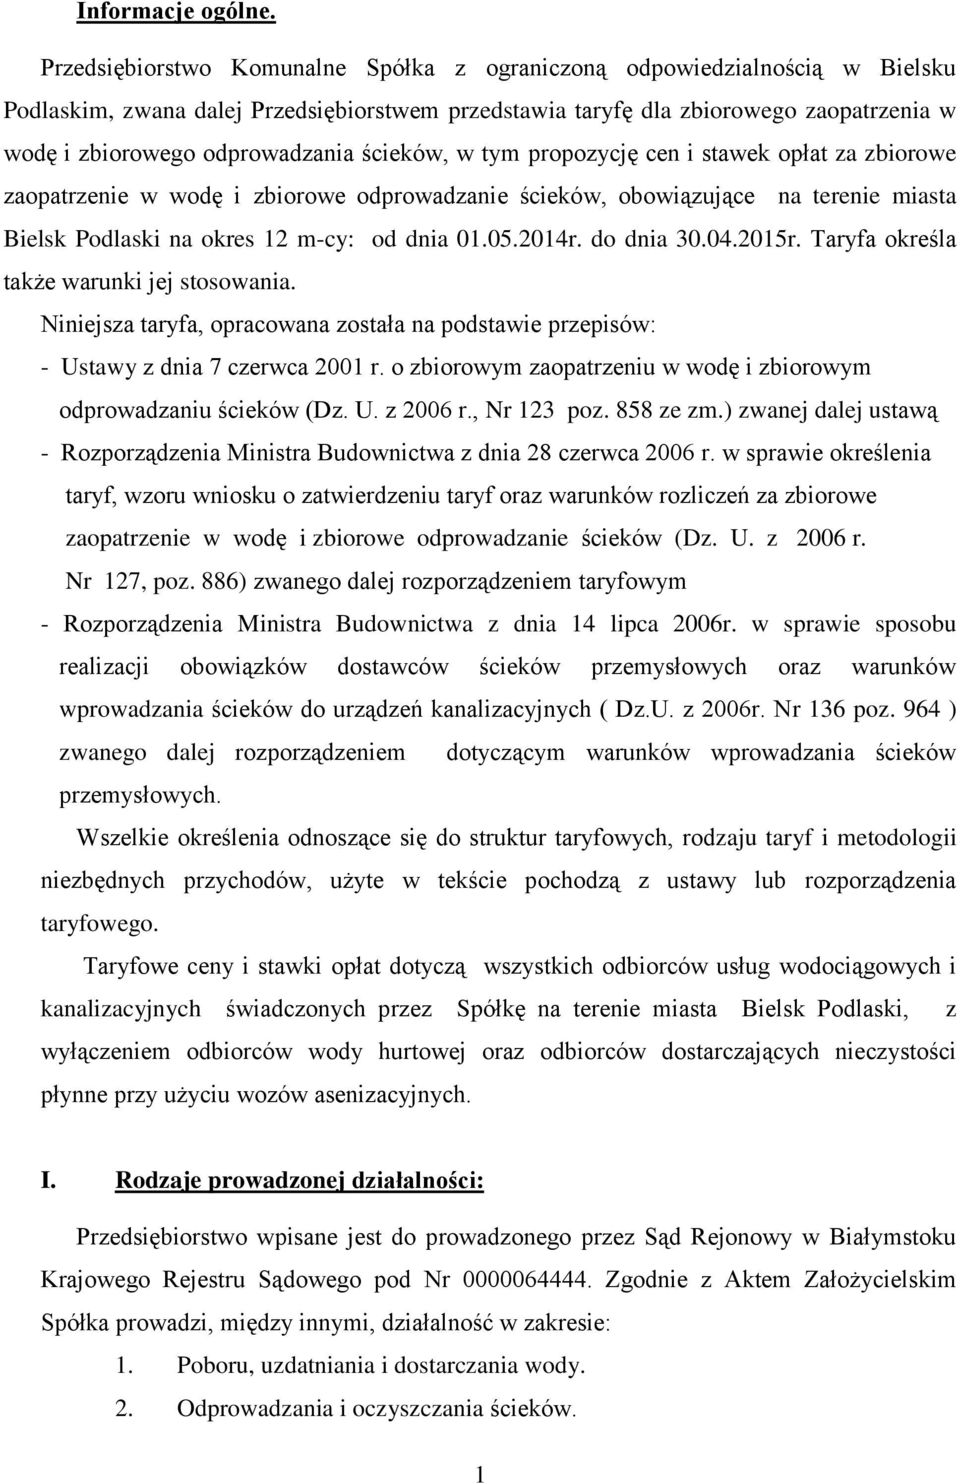 ścieków, w tym propozycję cen i stawek opłat za zbiorowe zaopatrzenie w wodę i zbiorowe odprowadzanie ścieków, obowiązujące na terenie miasta Bielsk Podlaski na okres 12 m-cy: od dnia 01.05.2014r.